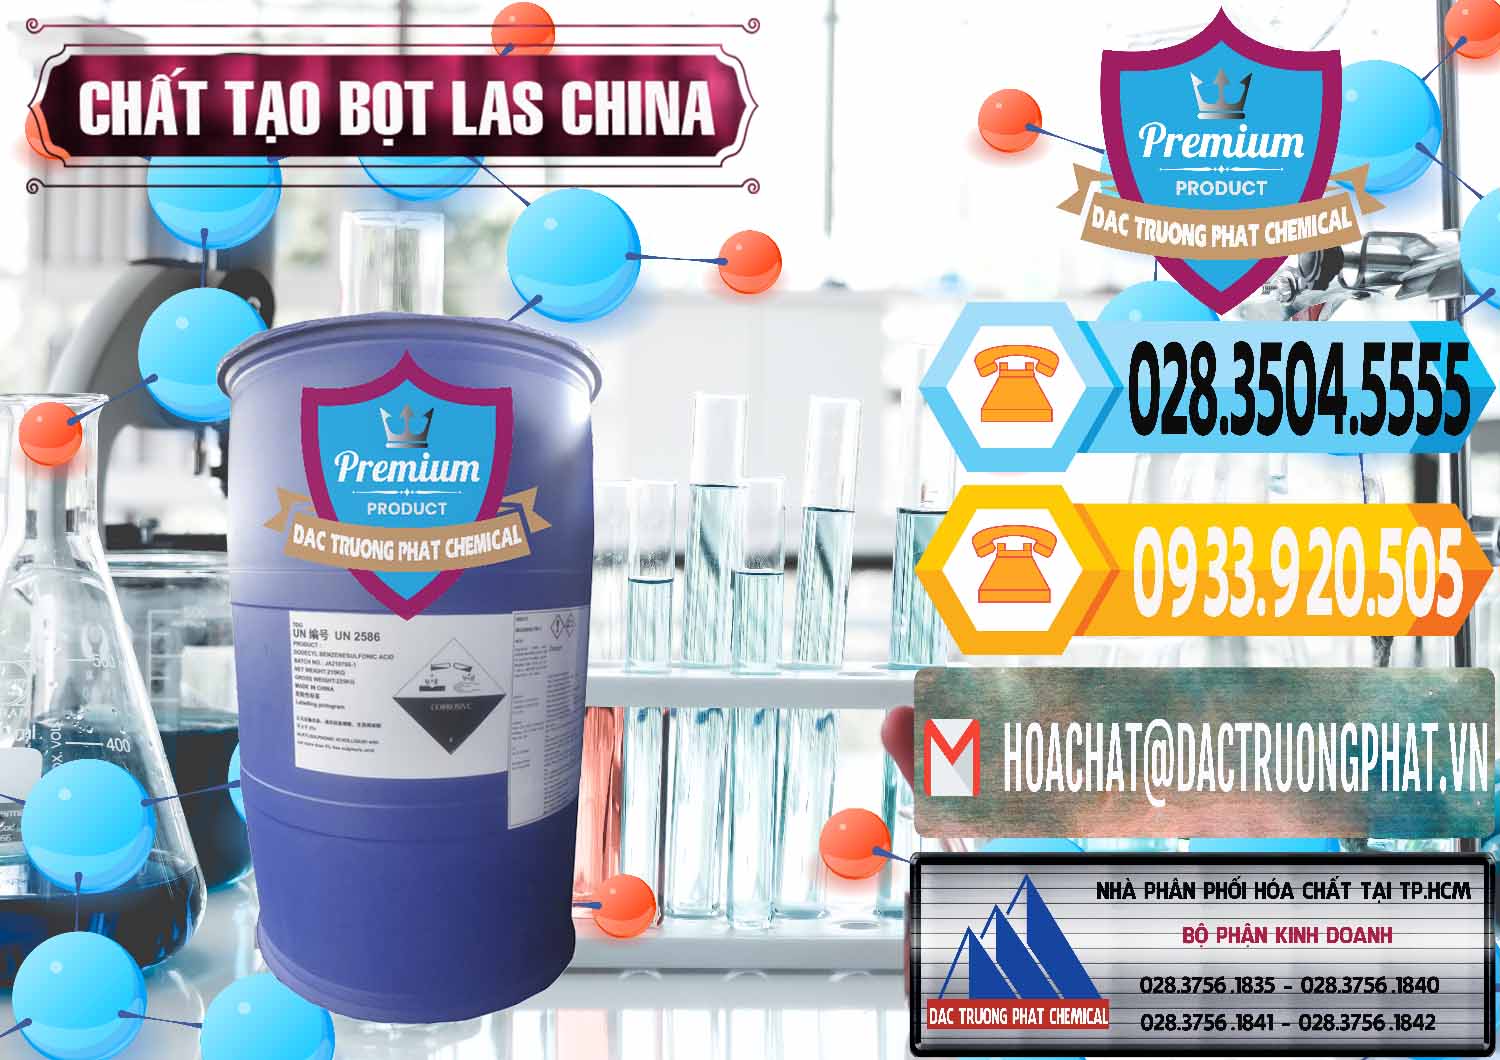 Nơi chuyên phân phối và bán Chất tạo bọt Las Trung Quốc China - 0451 - Công ty phân phối - bán hóa chất tại TP.HCM - hoachattayrua.net